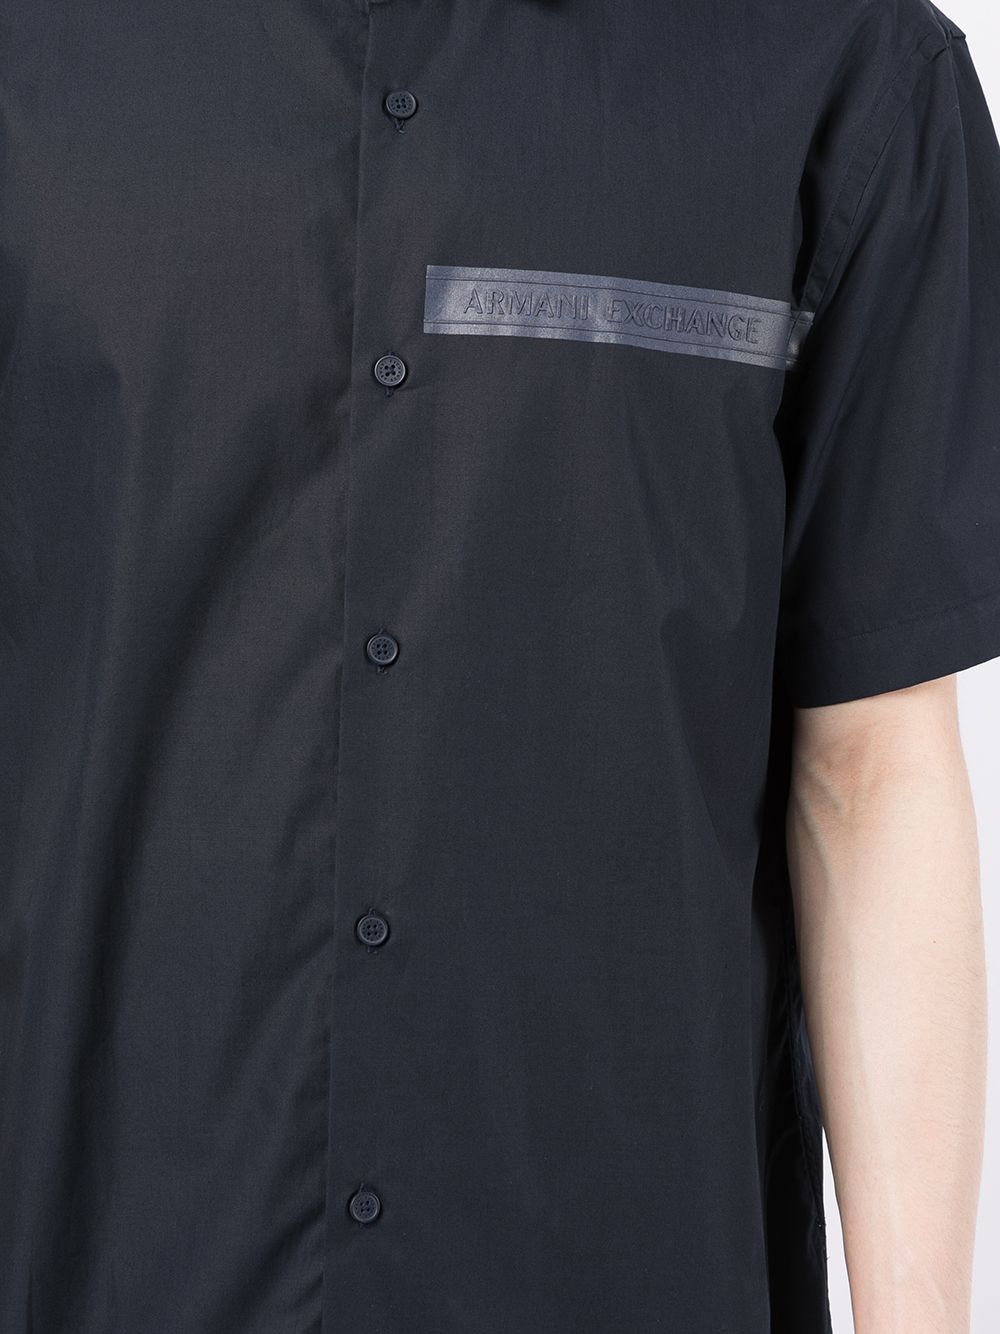 фото Armani exchange рубашка с логотипом